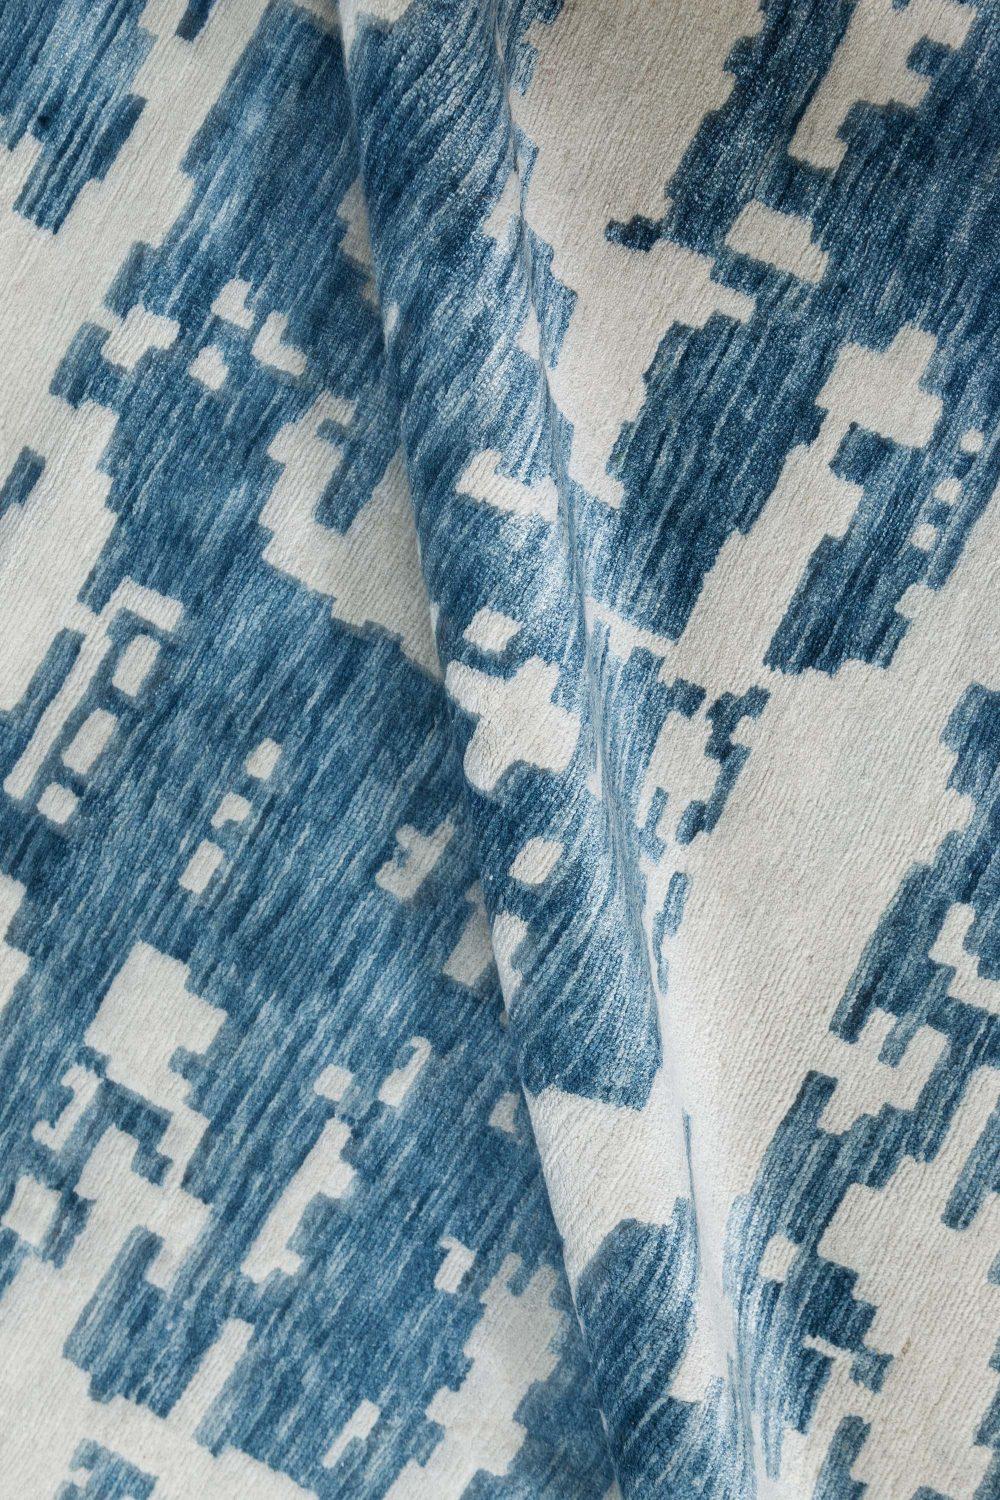 Zeitgenössischer übergroßer blauer, weißer Aqua element teppich von Doris Leslie Blau
Größe: 13'10